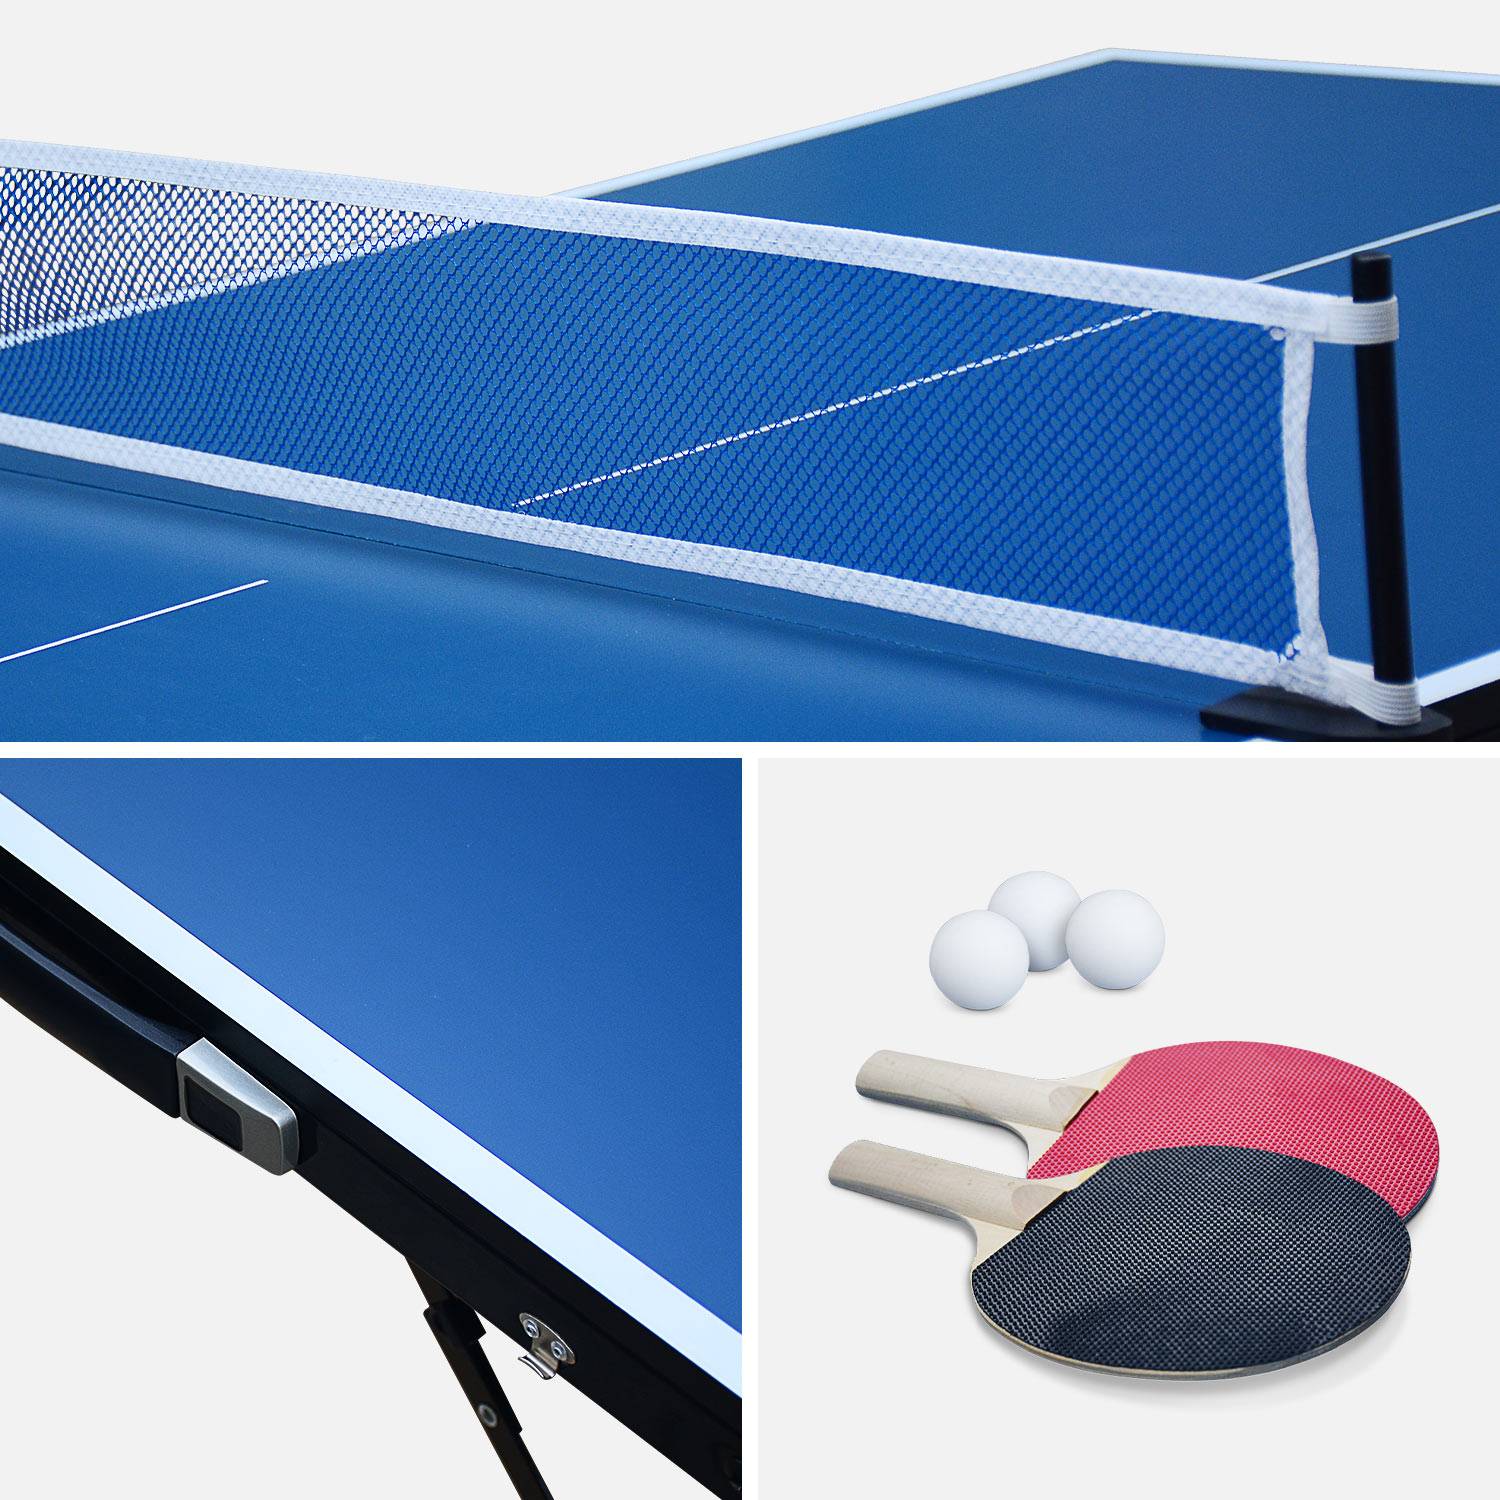 Mini table de ping pong 150x75cm - table pliable INDOOR bleue, avec 2 raquettes et 3 balles, valise de jeu pour utilisation intérieure, sport tennis de table Photo4